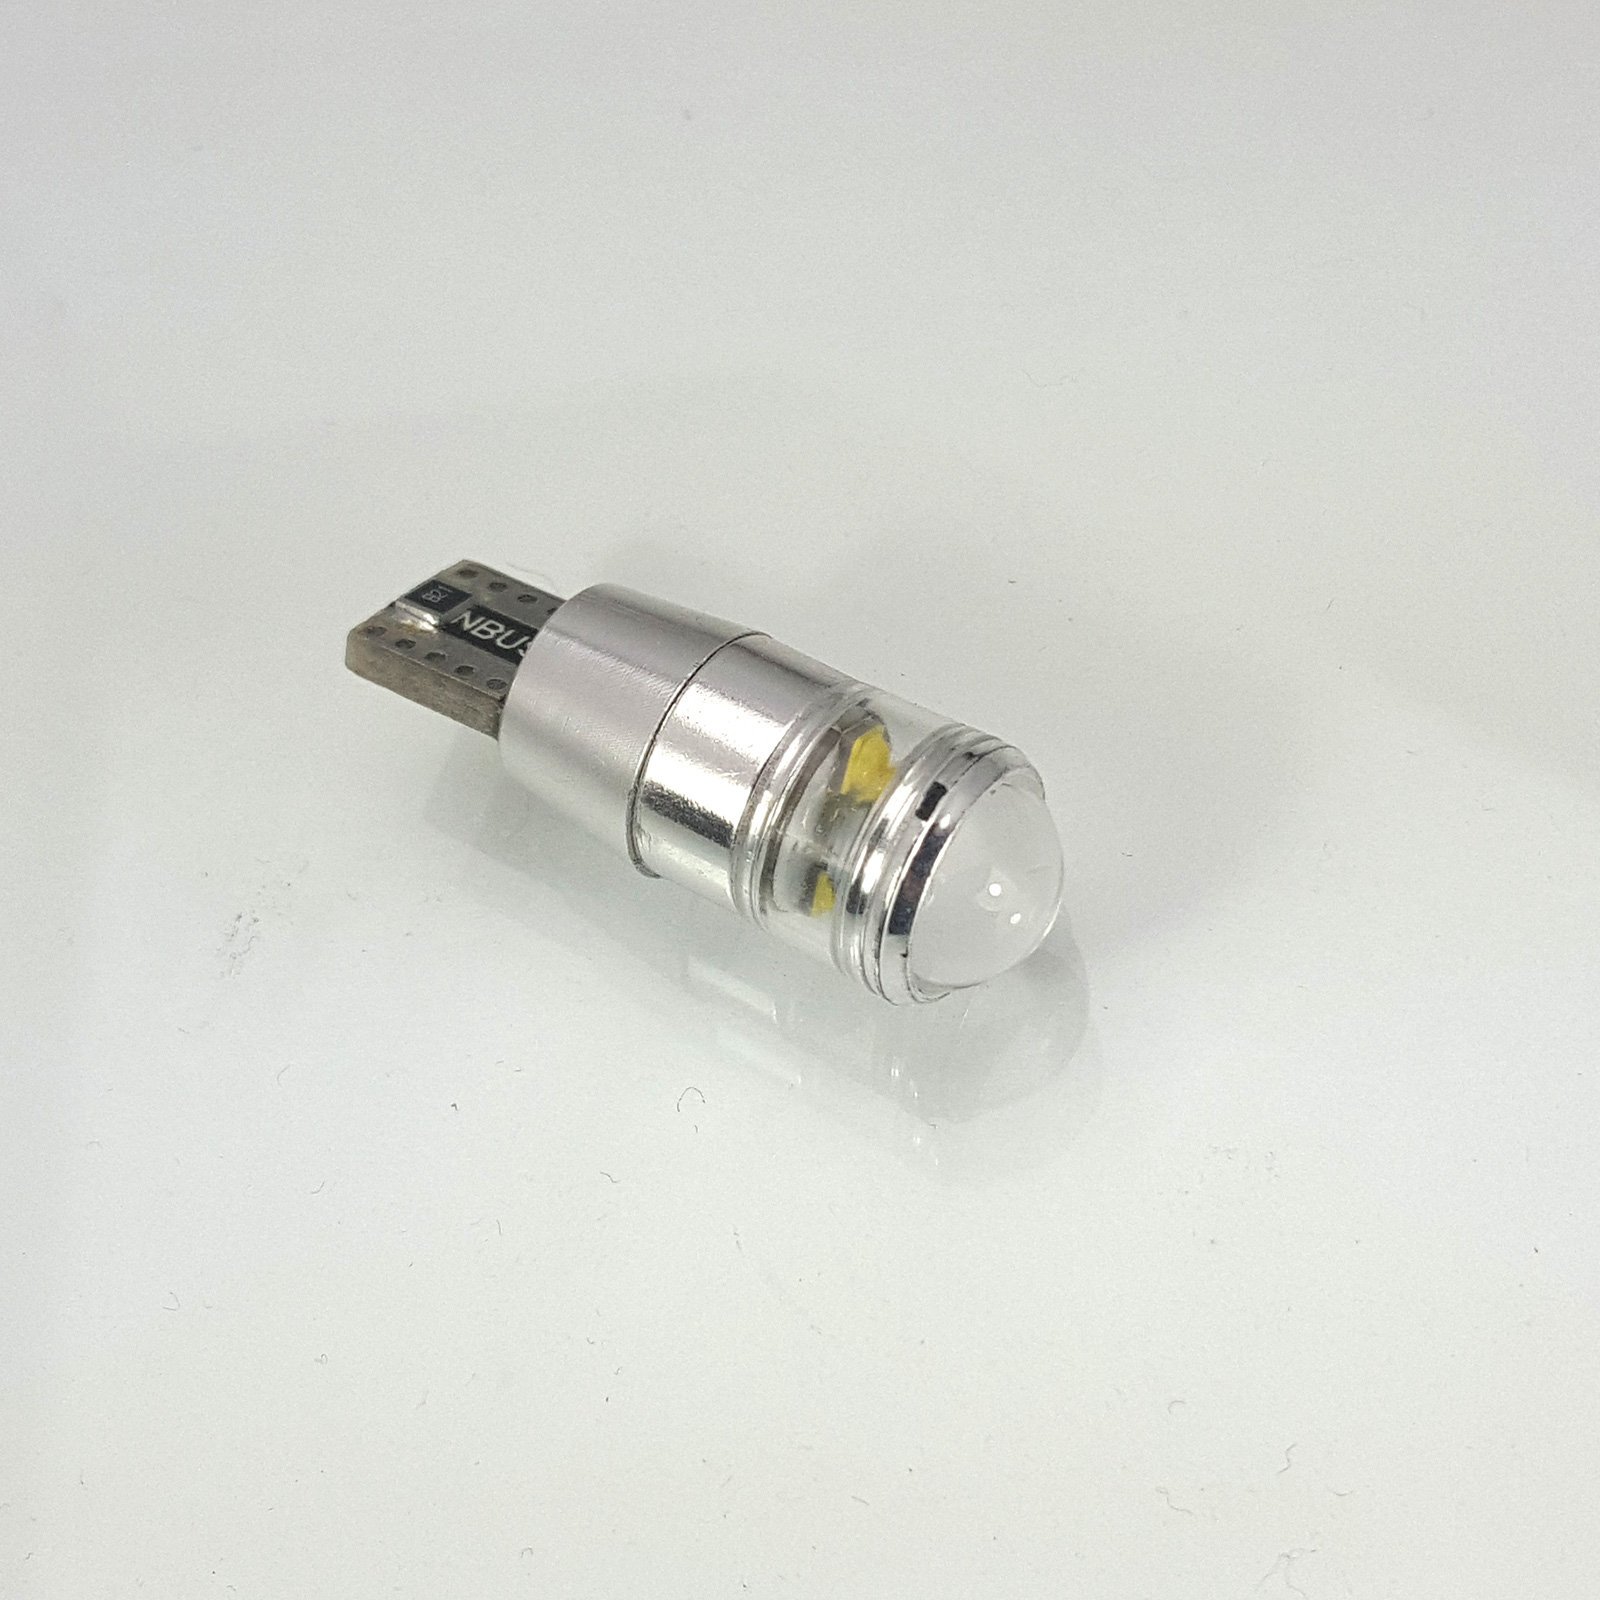 W5W (T10) 7.5W High Power LED Bulb +lense (5*1.5W) WHITE